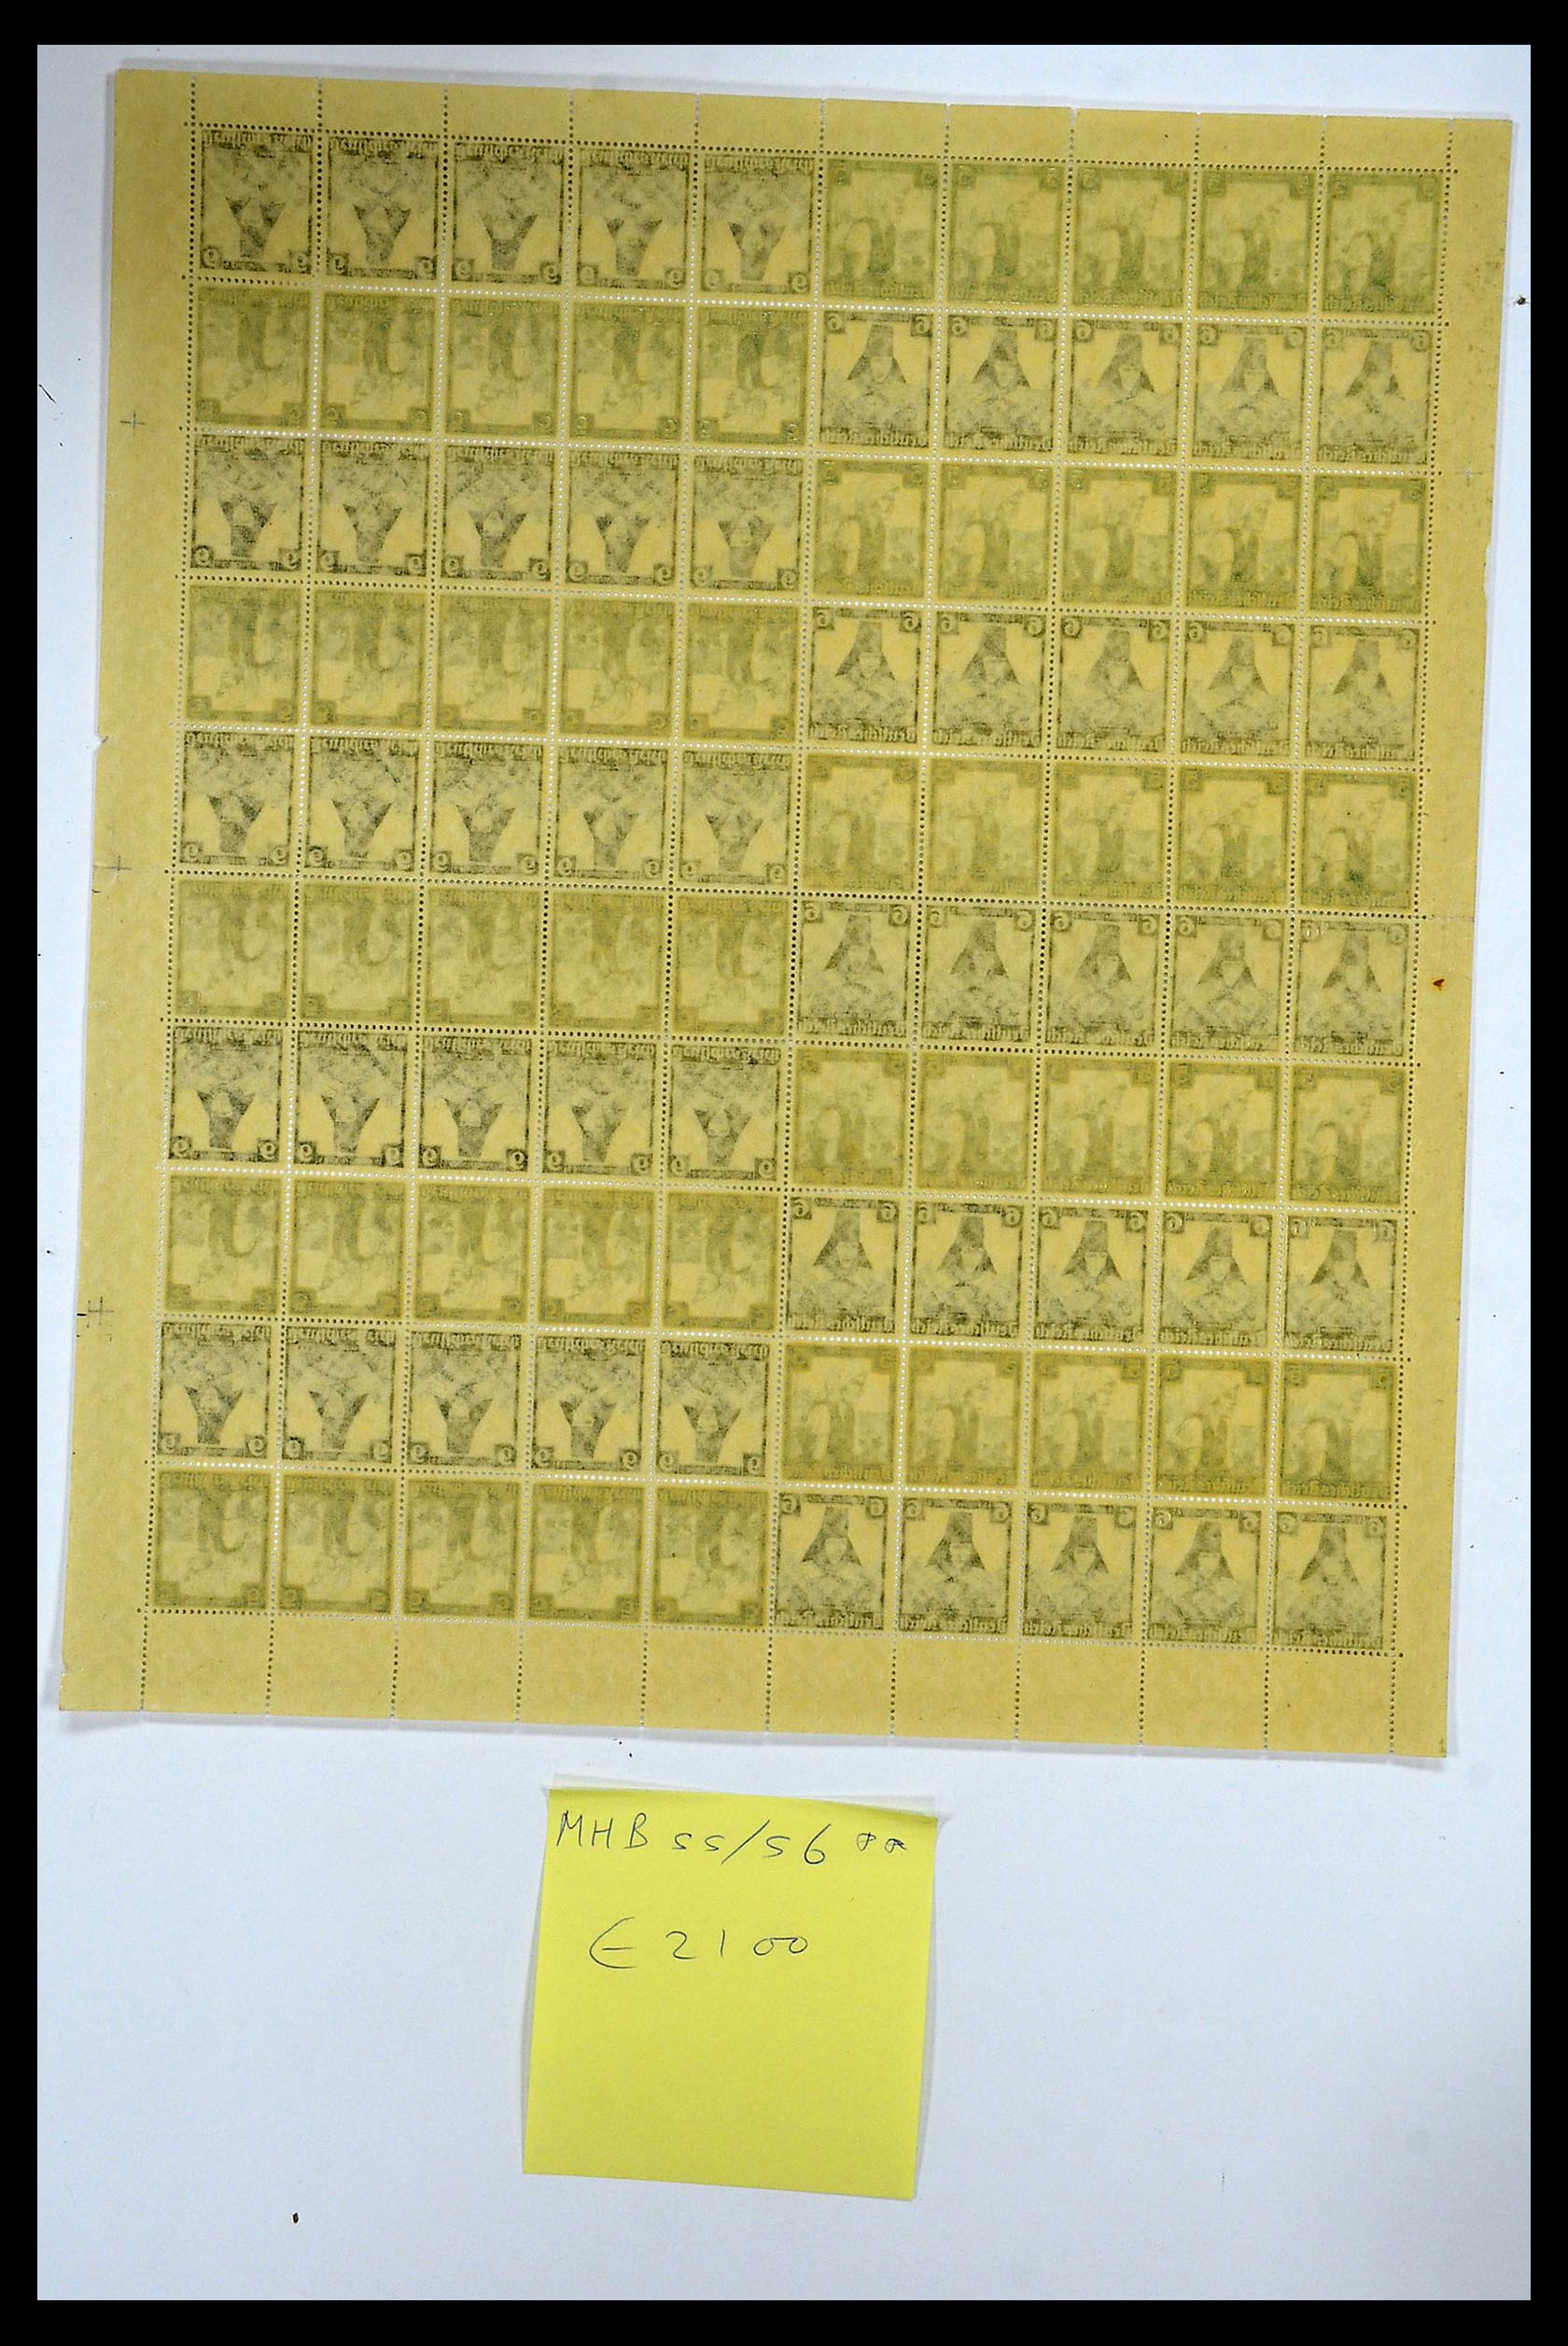 35075 036 - Stamp Collection 35075 German Reich Markenheftchenbogen 1933-1941.